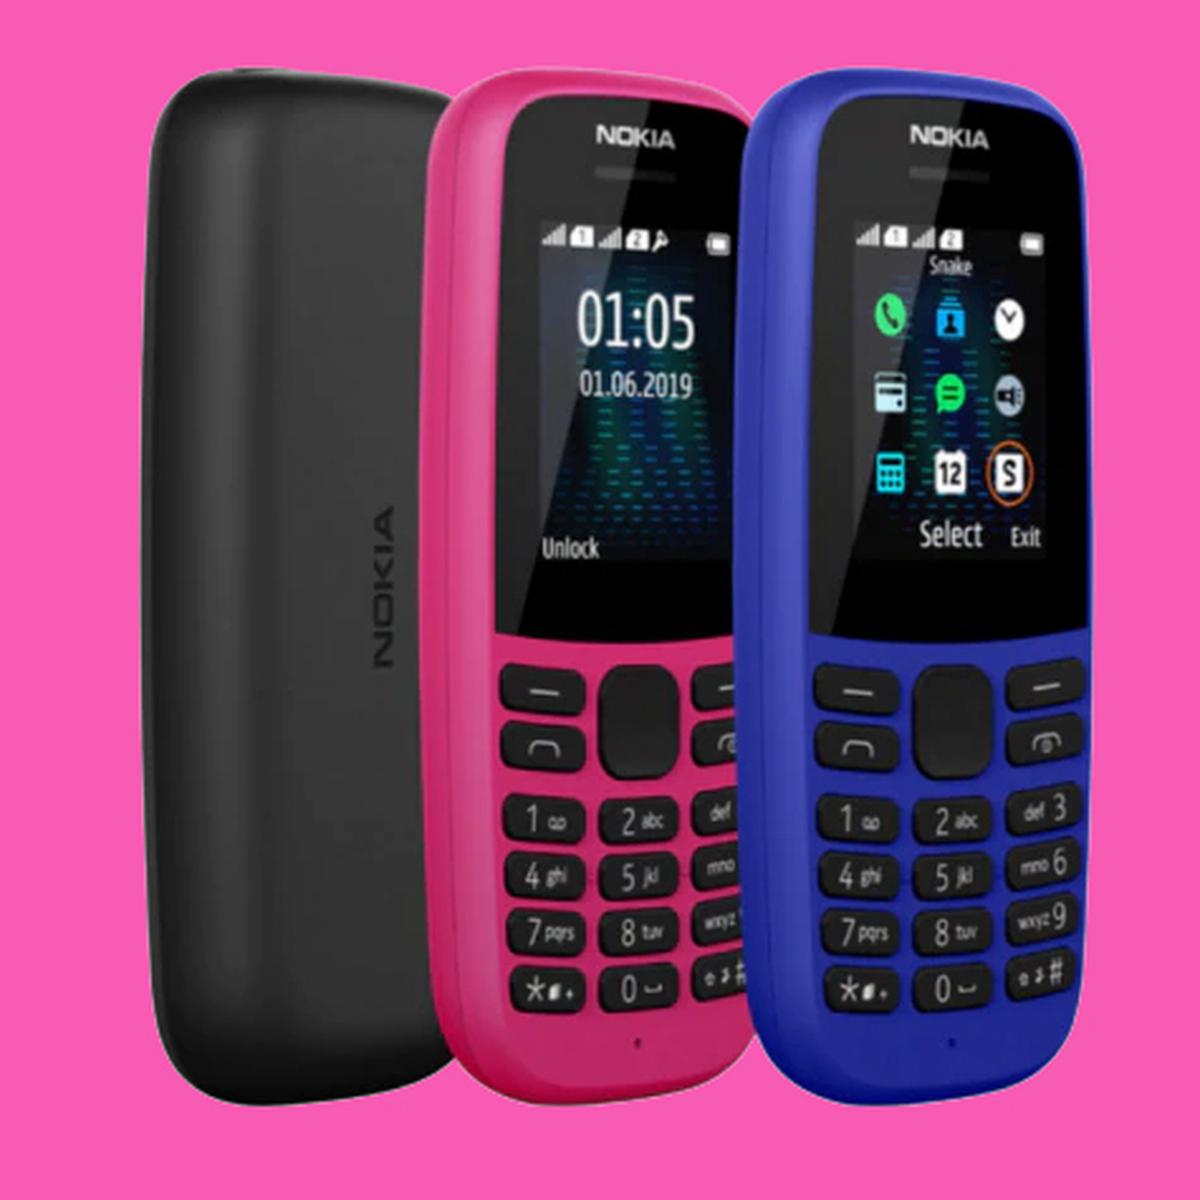 El nuevo teléfono básico Nokia 105